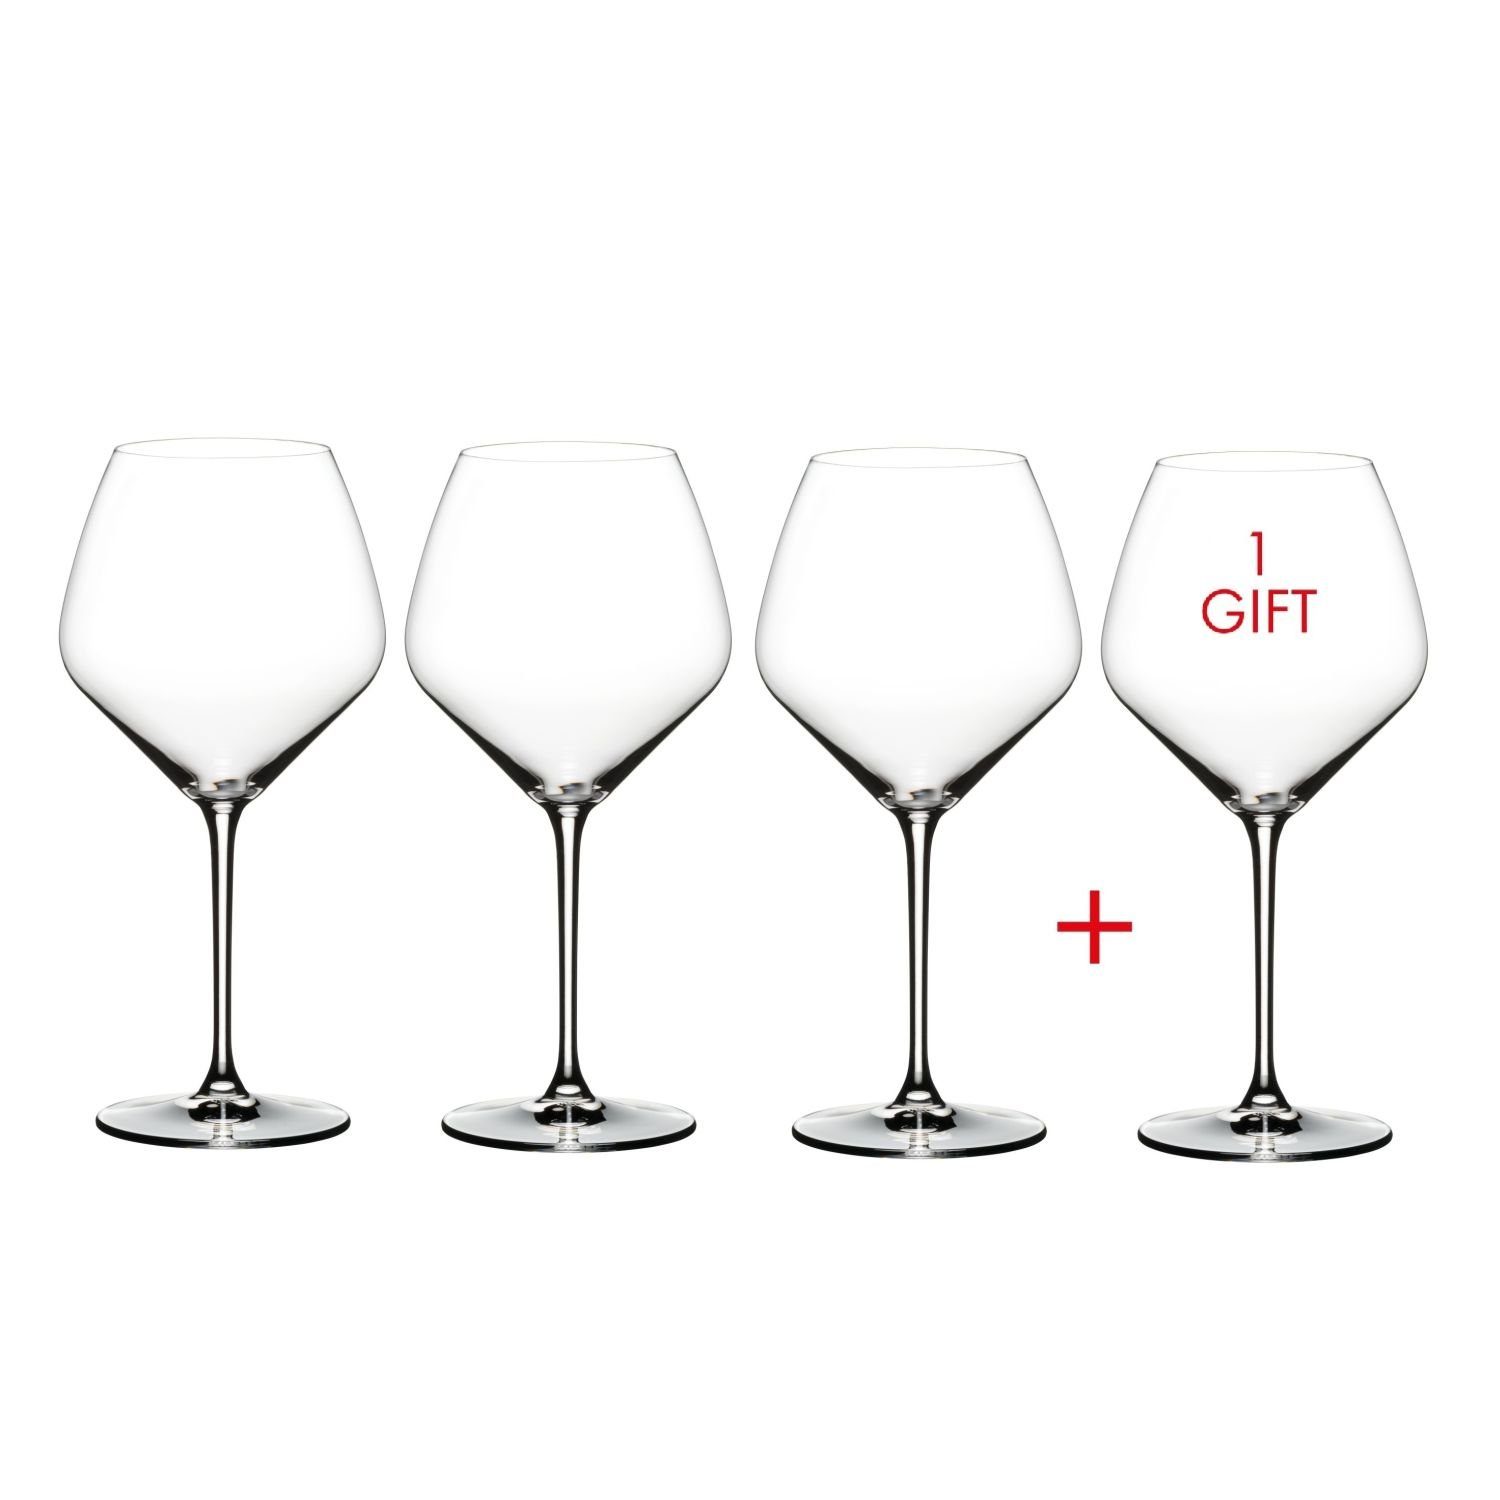 RIEDEL THE WINE GLASS COMPANY Weinglas Extreme Pinot Noir Kauf 4 Zahl 3, Kristallglas